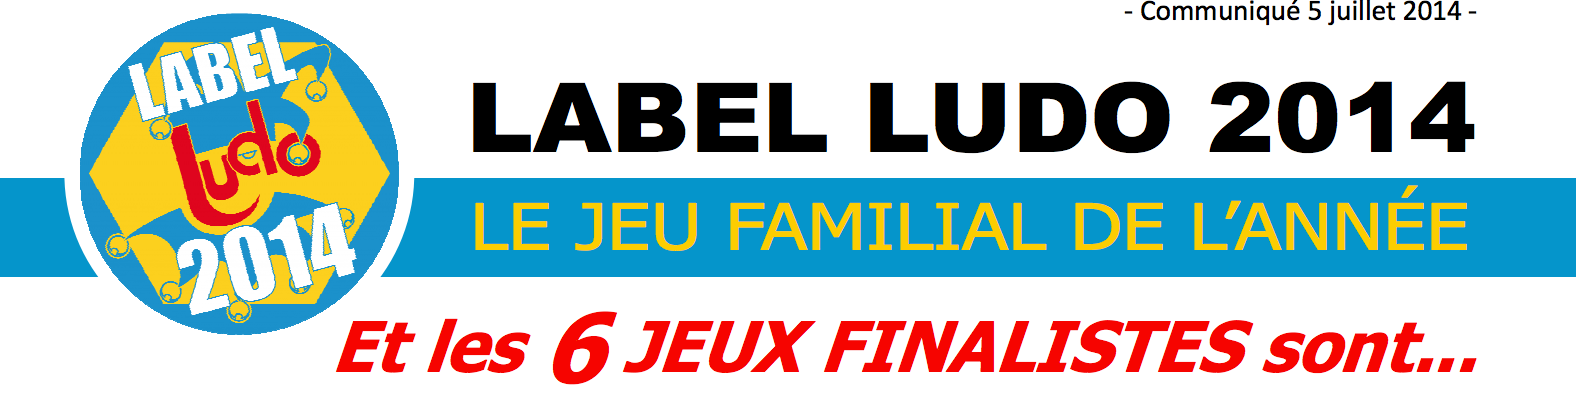 Les finalistes du LudoLabel 2014 sont